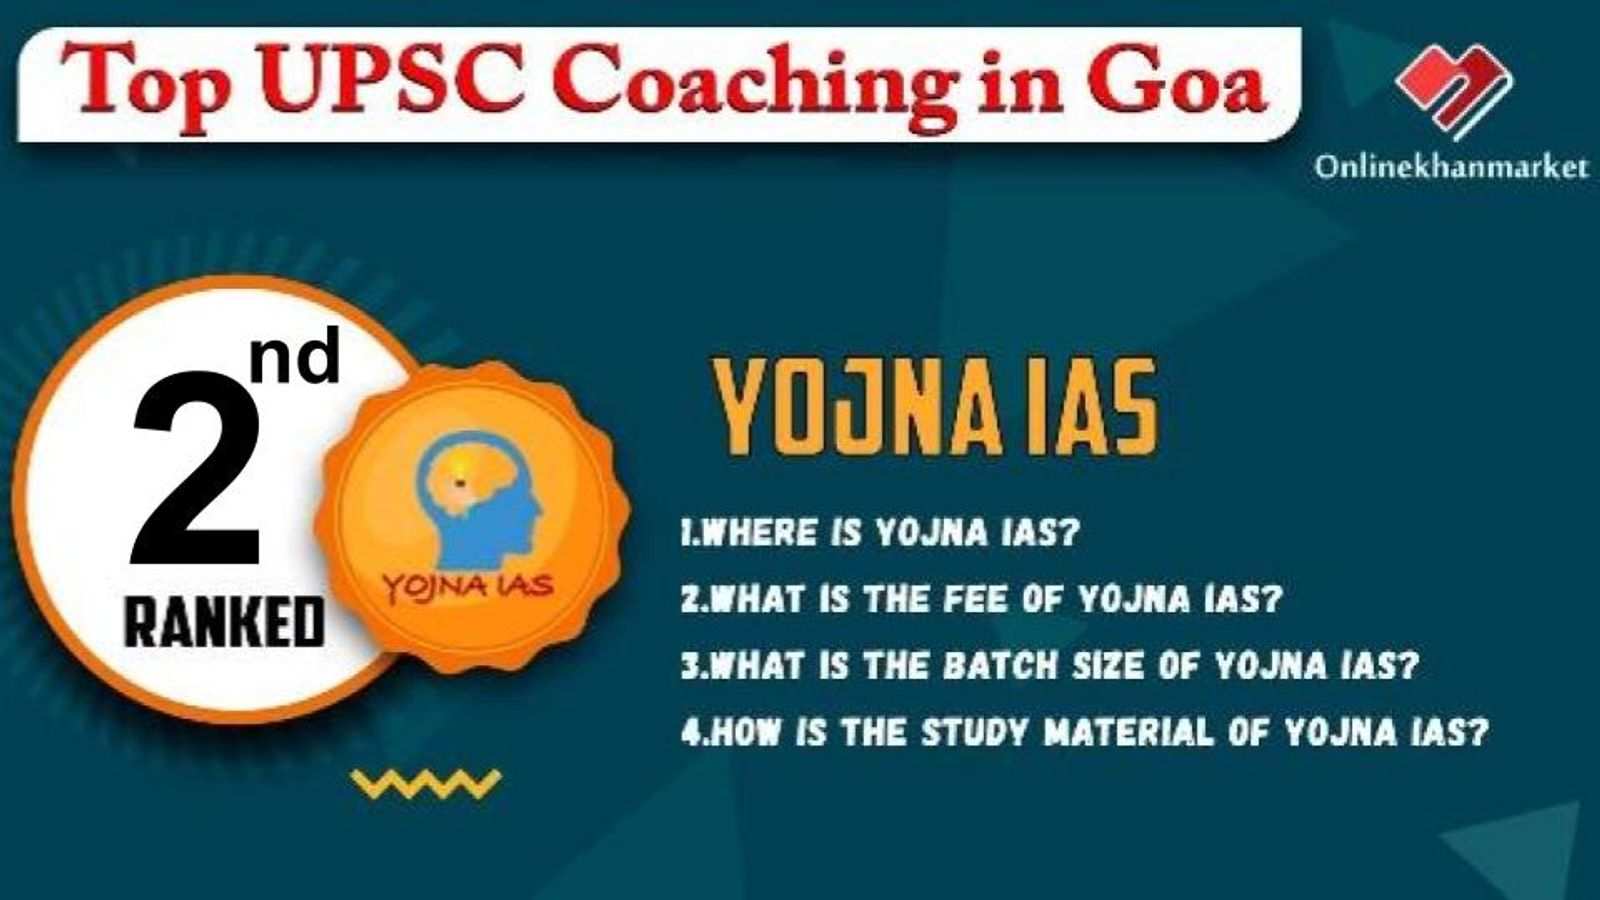 Top IAS Coaching in Goa